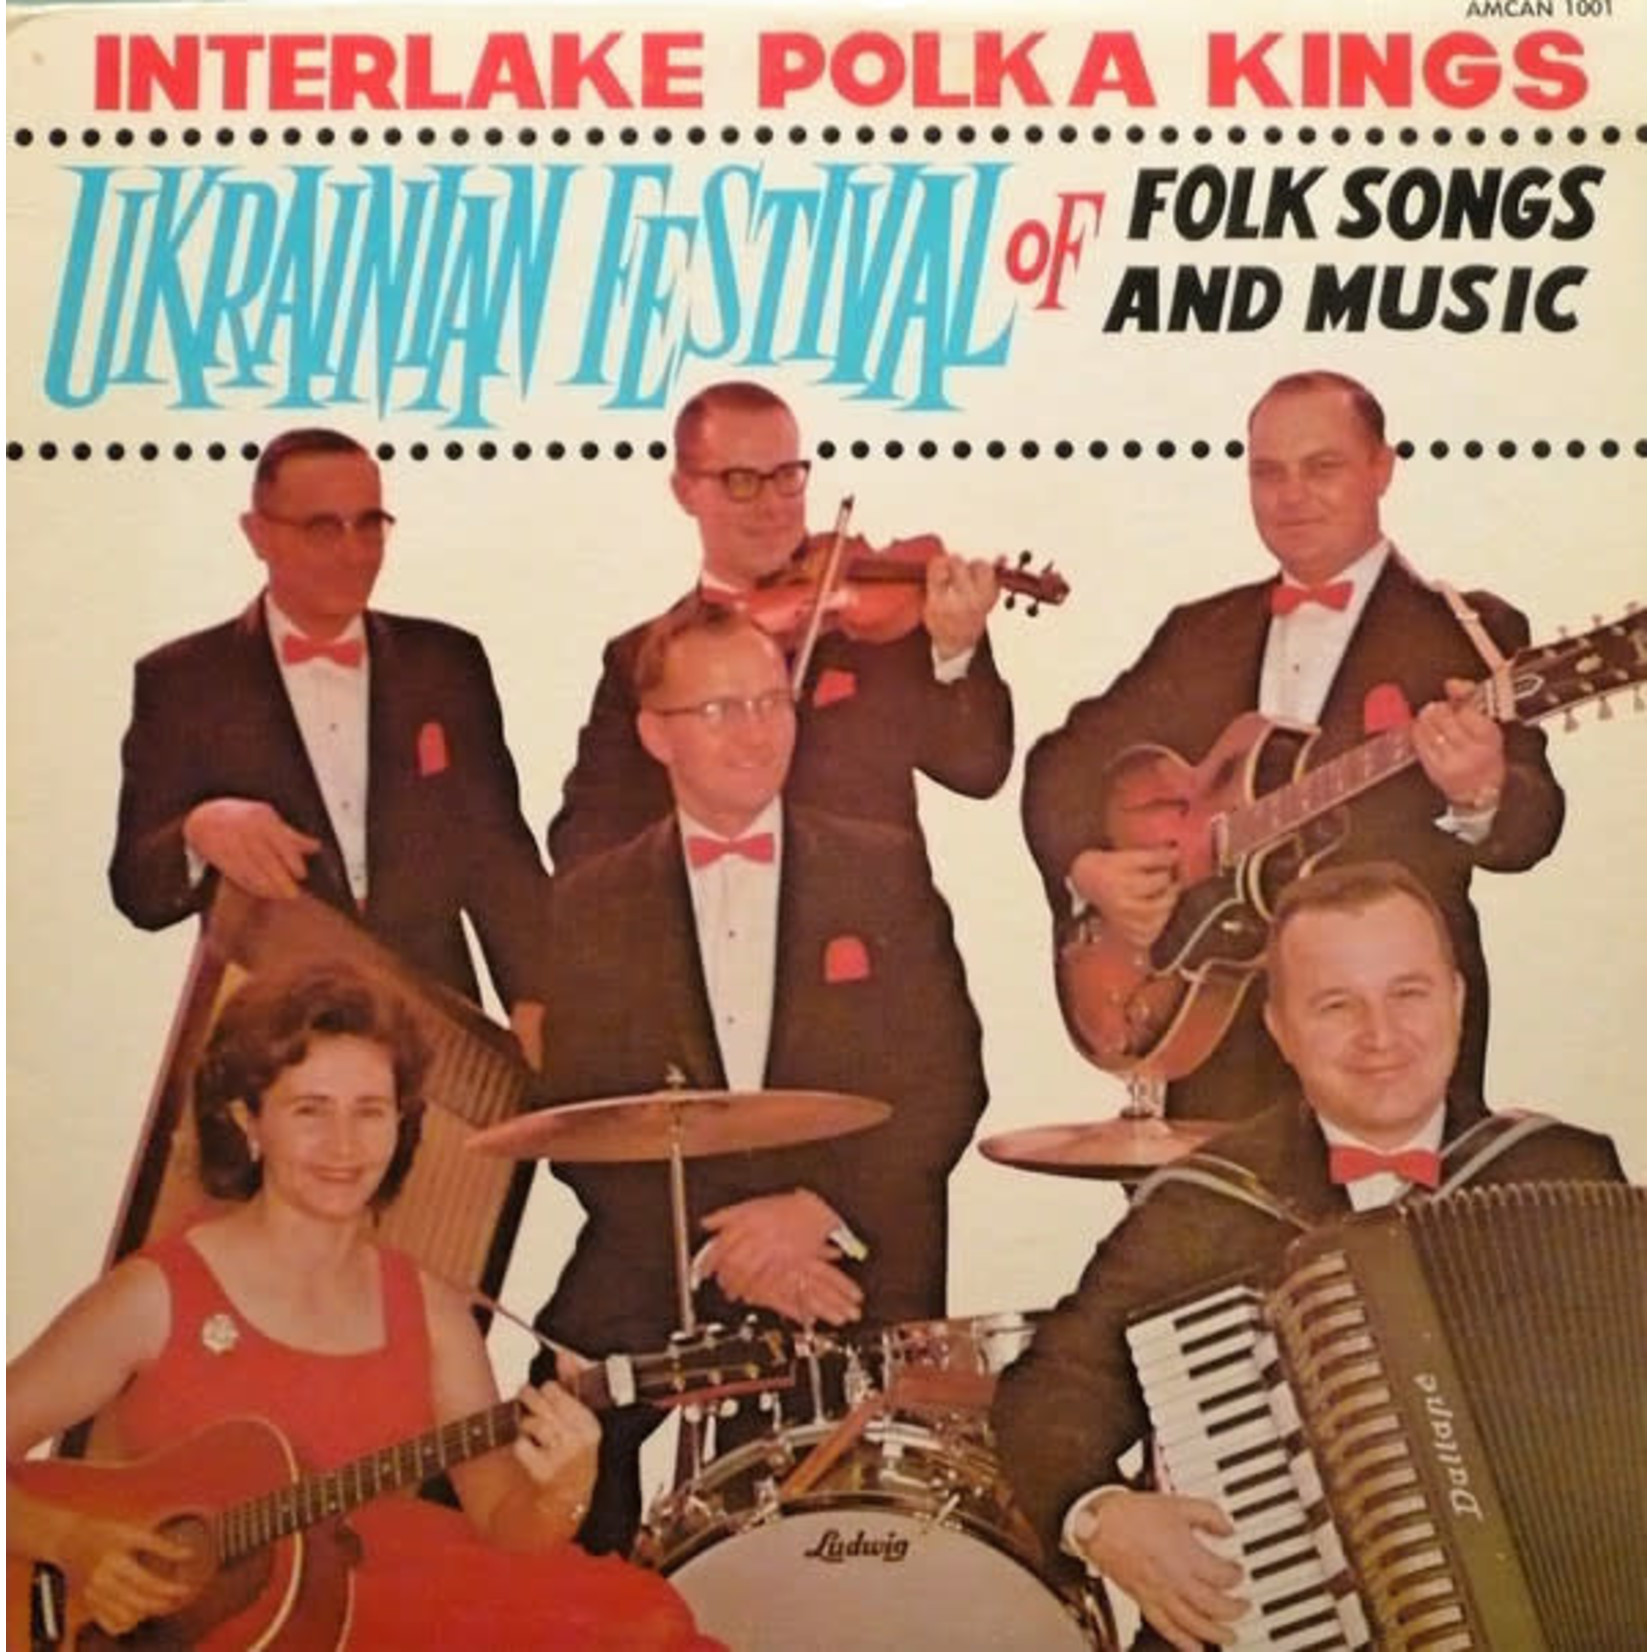 Interlake Polka Kings Interlake Polka Kings – Ukrainian Festival Of Folk Songs And Music (VG)